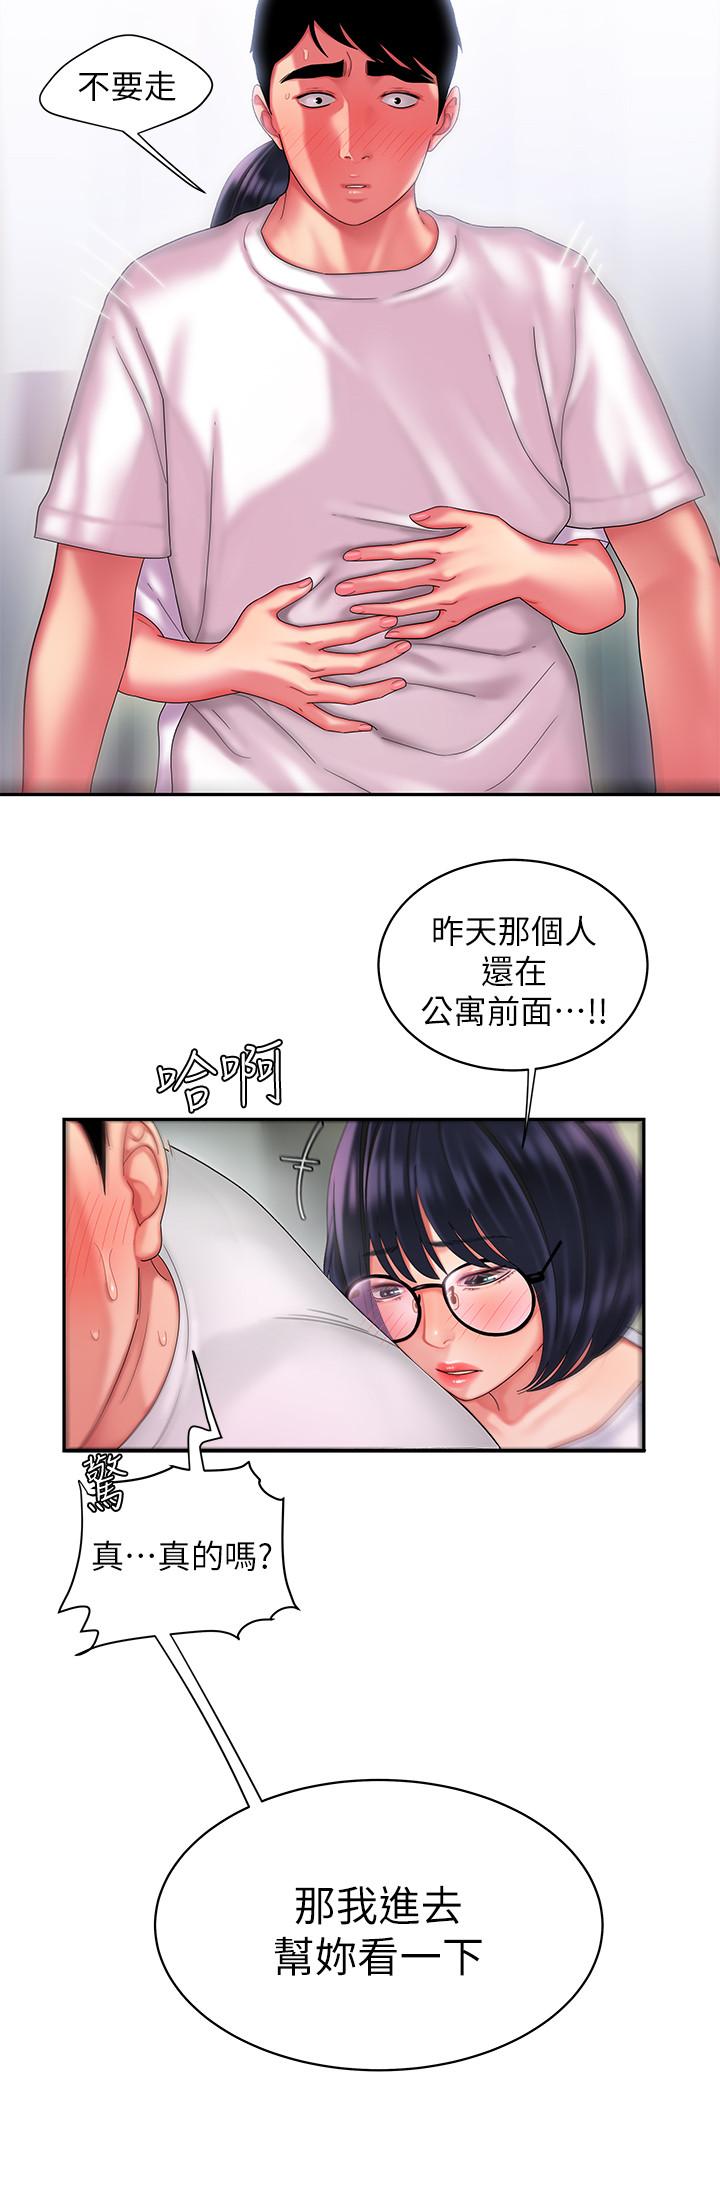 韩国污漫画 幸福外送員 第19话-让人变得愉悦的胸部 19